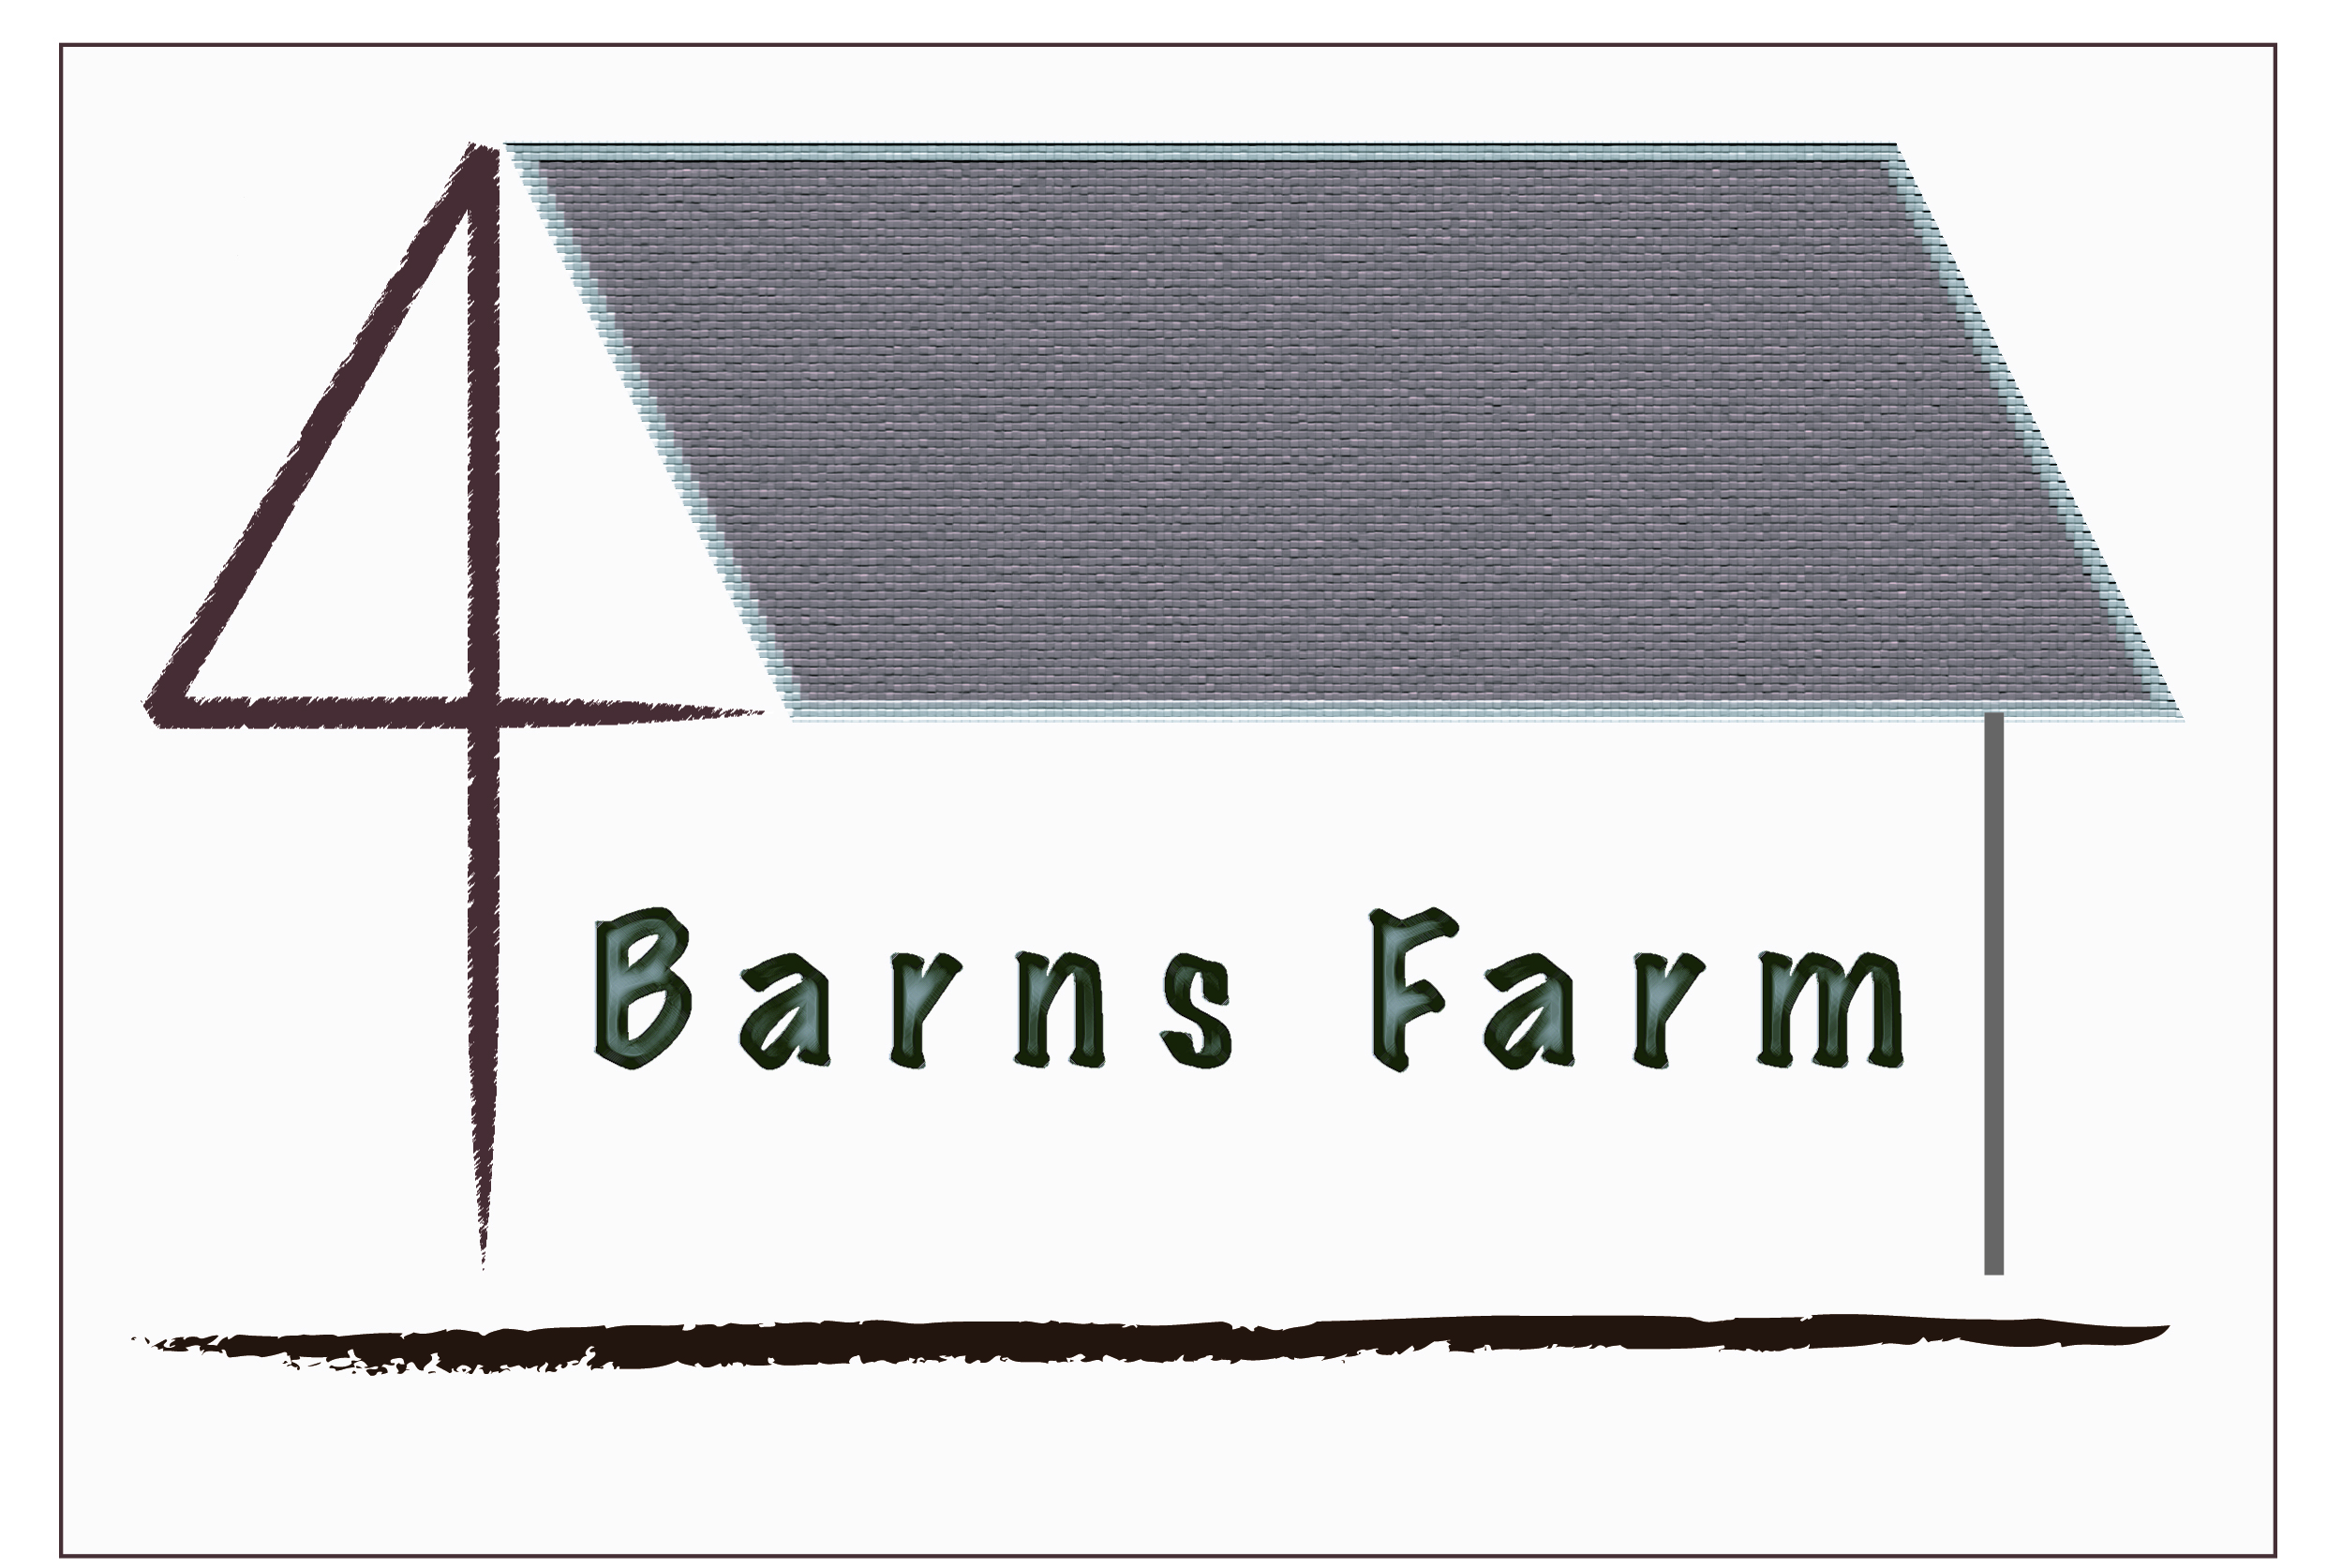 Four Barns Farm